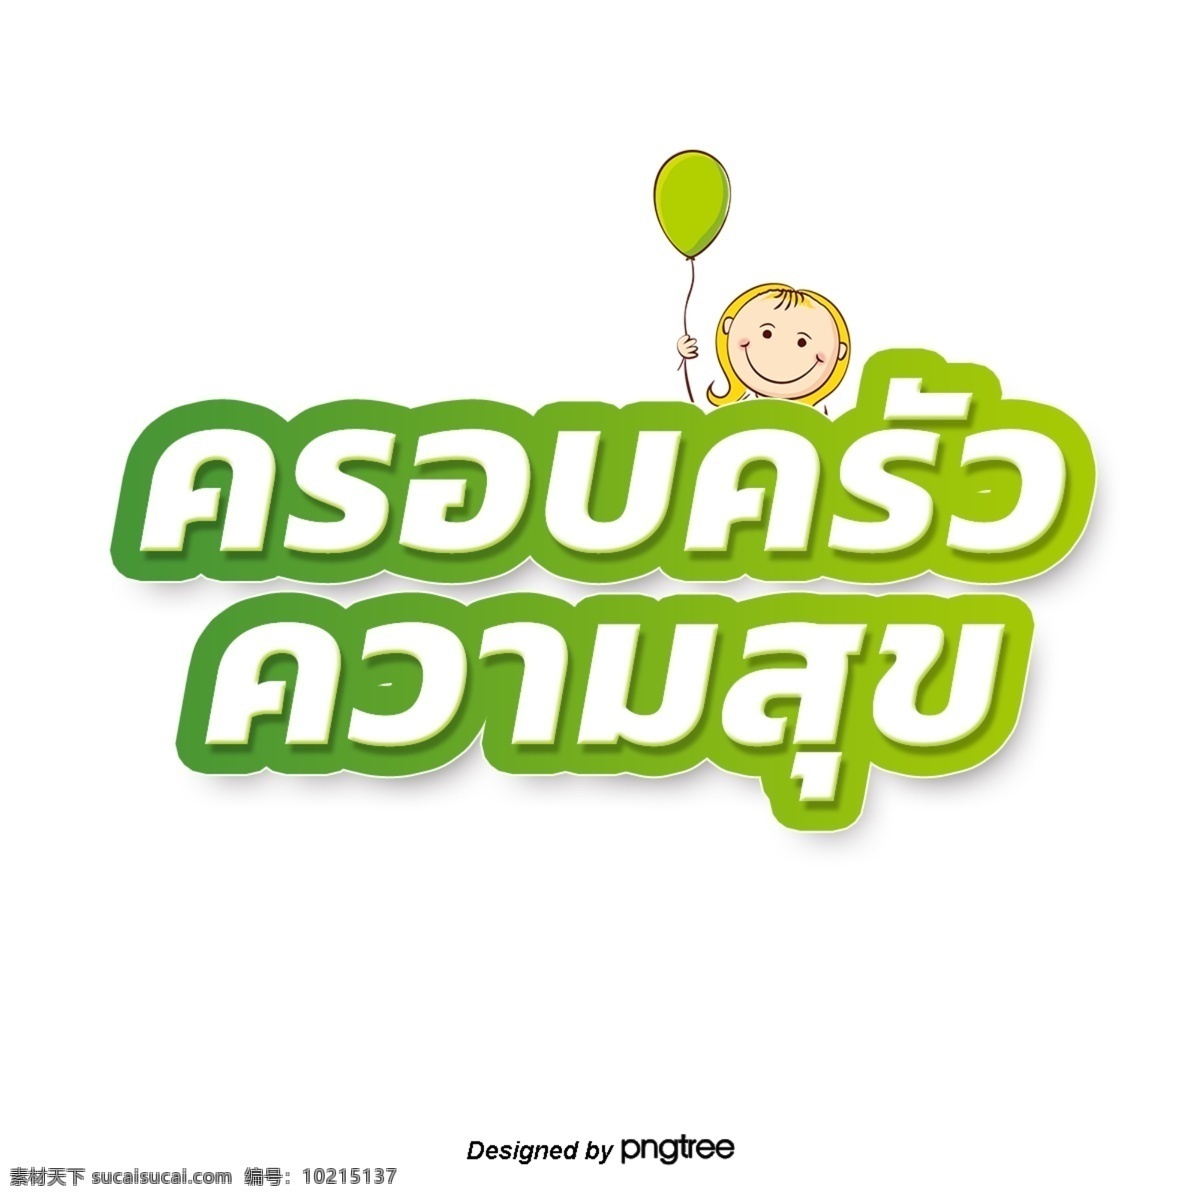 泰国 白色 字体 边缘 绿色 长颈鹿 愉快 浅绿色